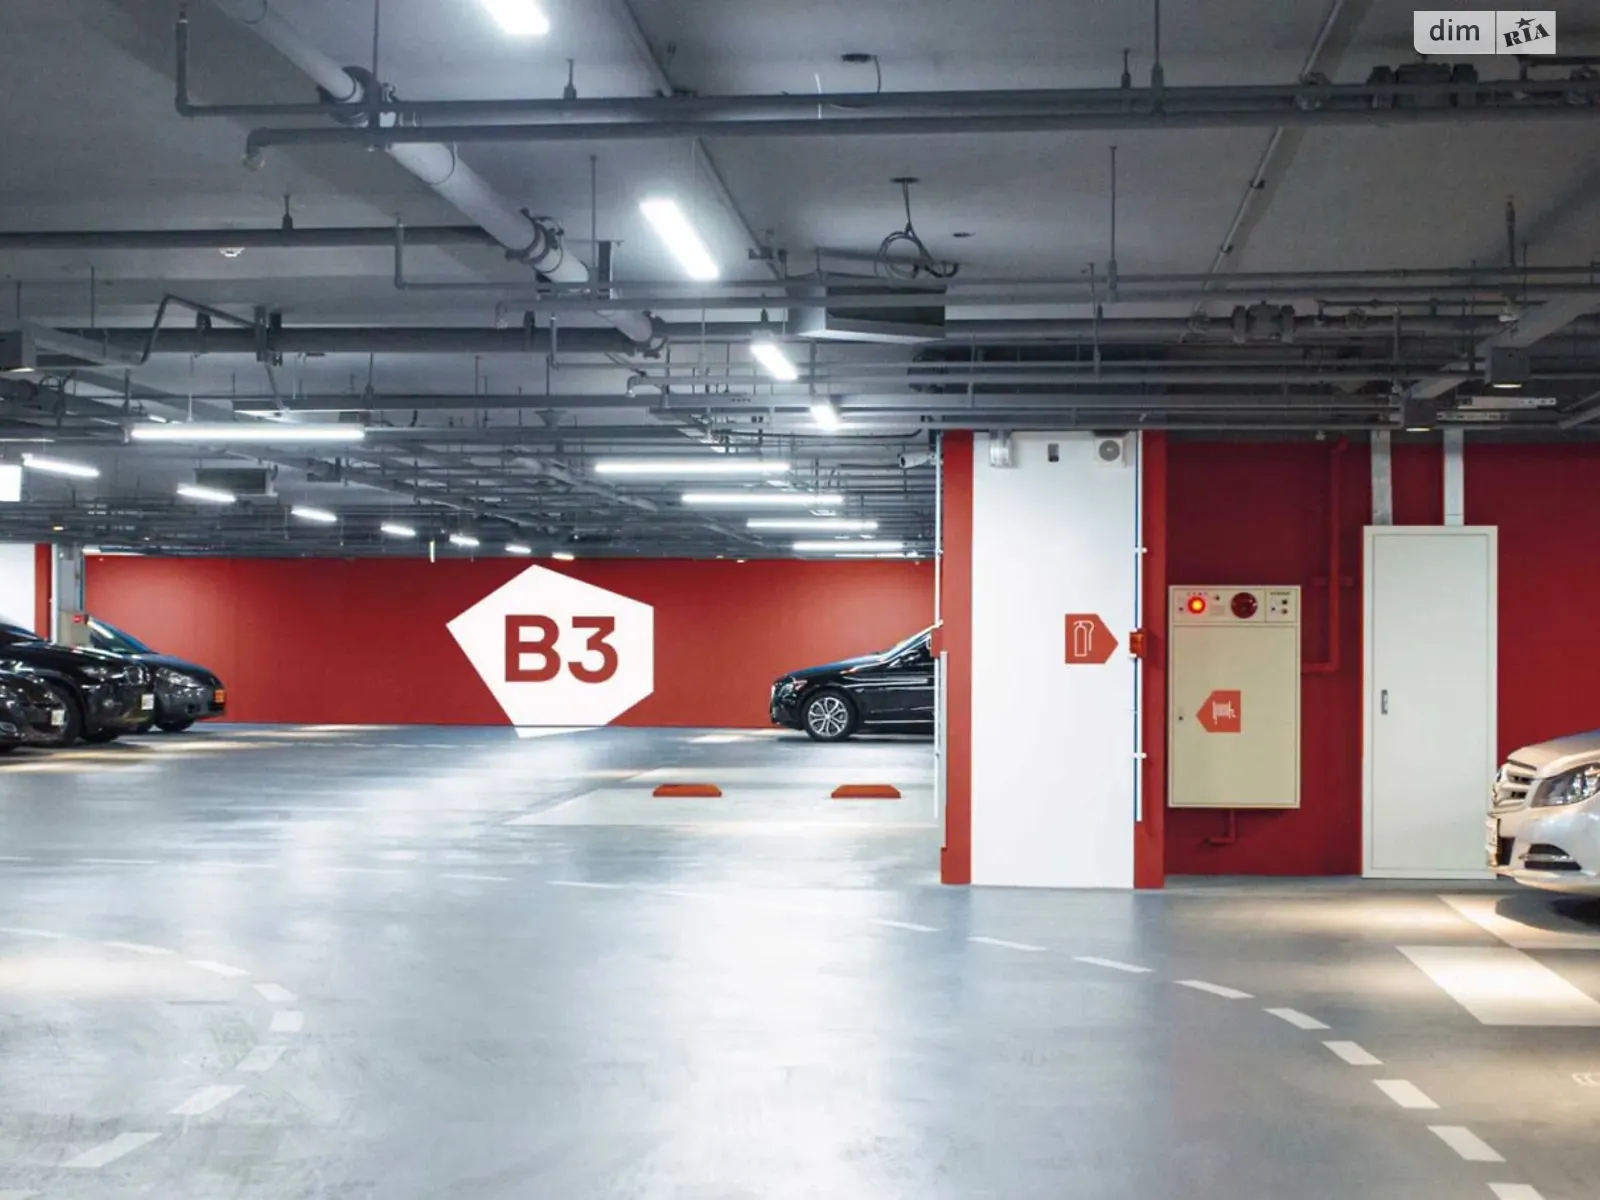 Продается подземный паркинг под легковое авто на 16 кв. м, цена: 660000 грн - фото 1